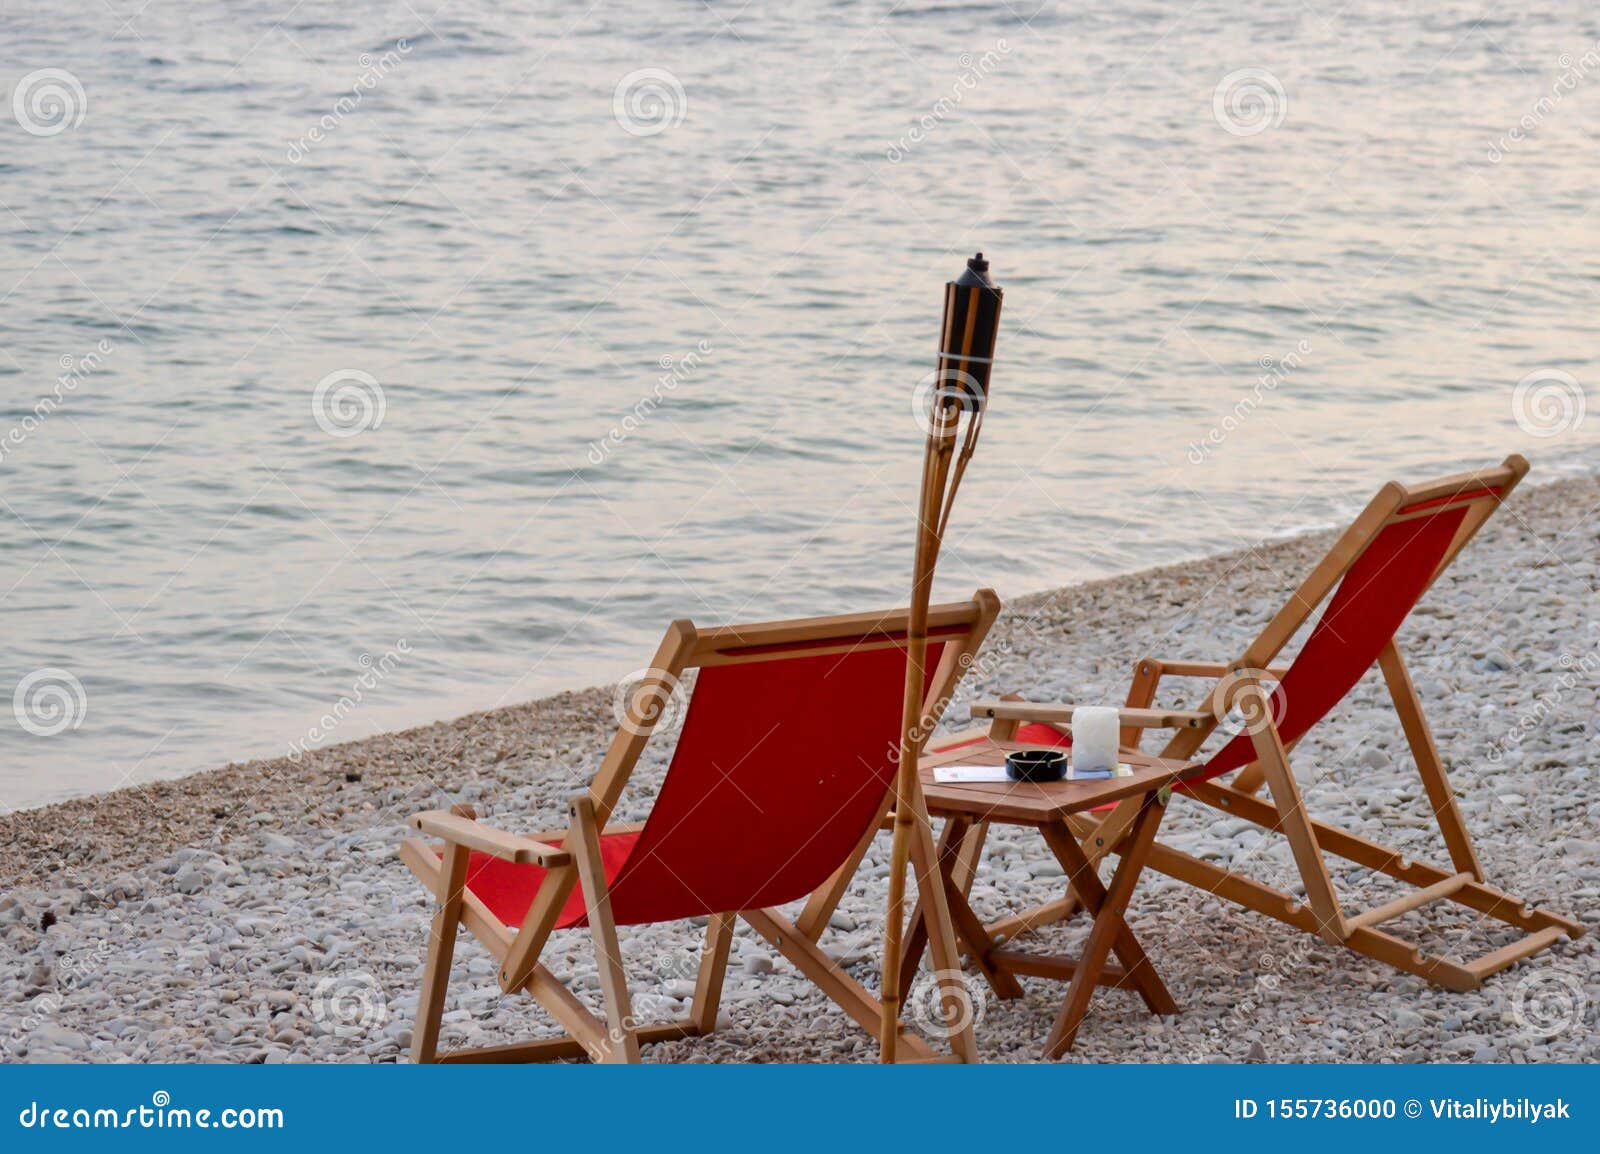 adriatic beach chair